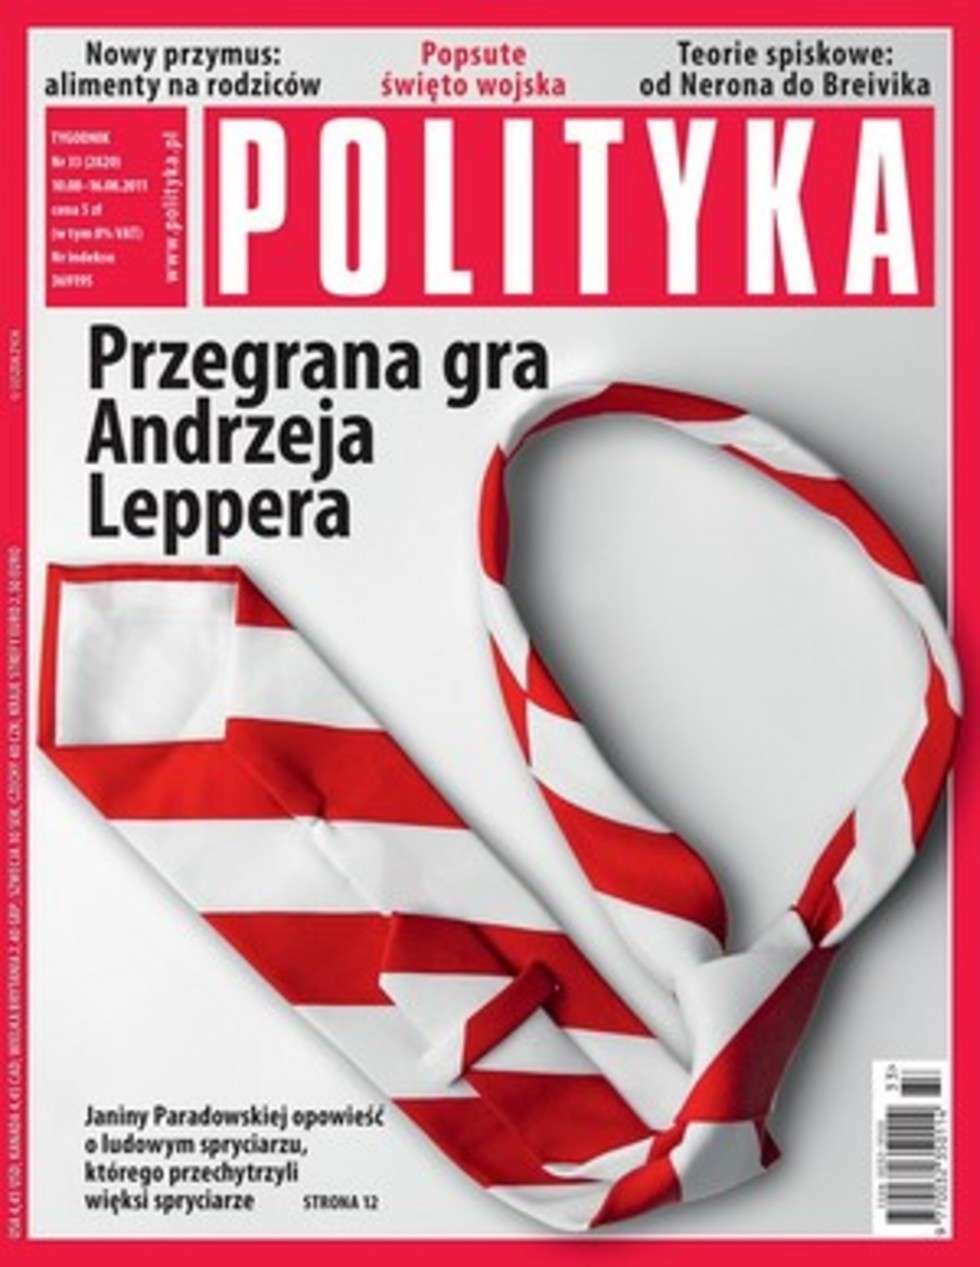  Czasopisma opinii III miejsce: "Polityka" nr 33/2011